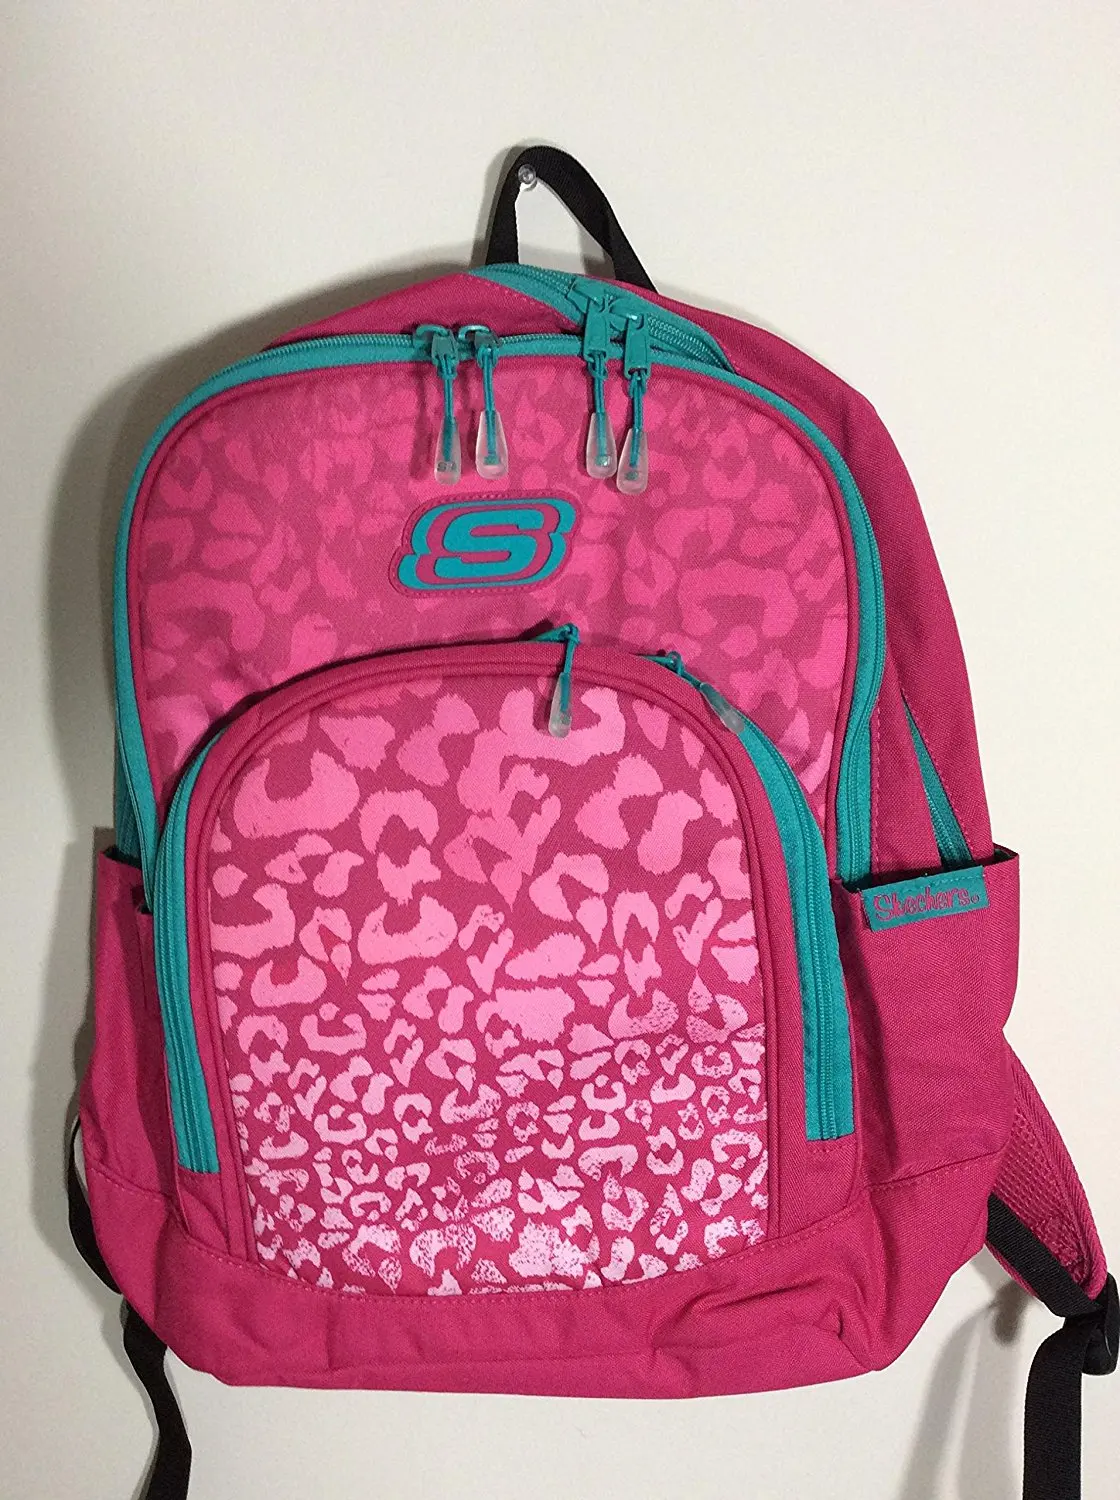 skechers backpack pink